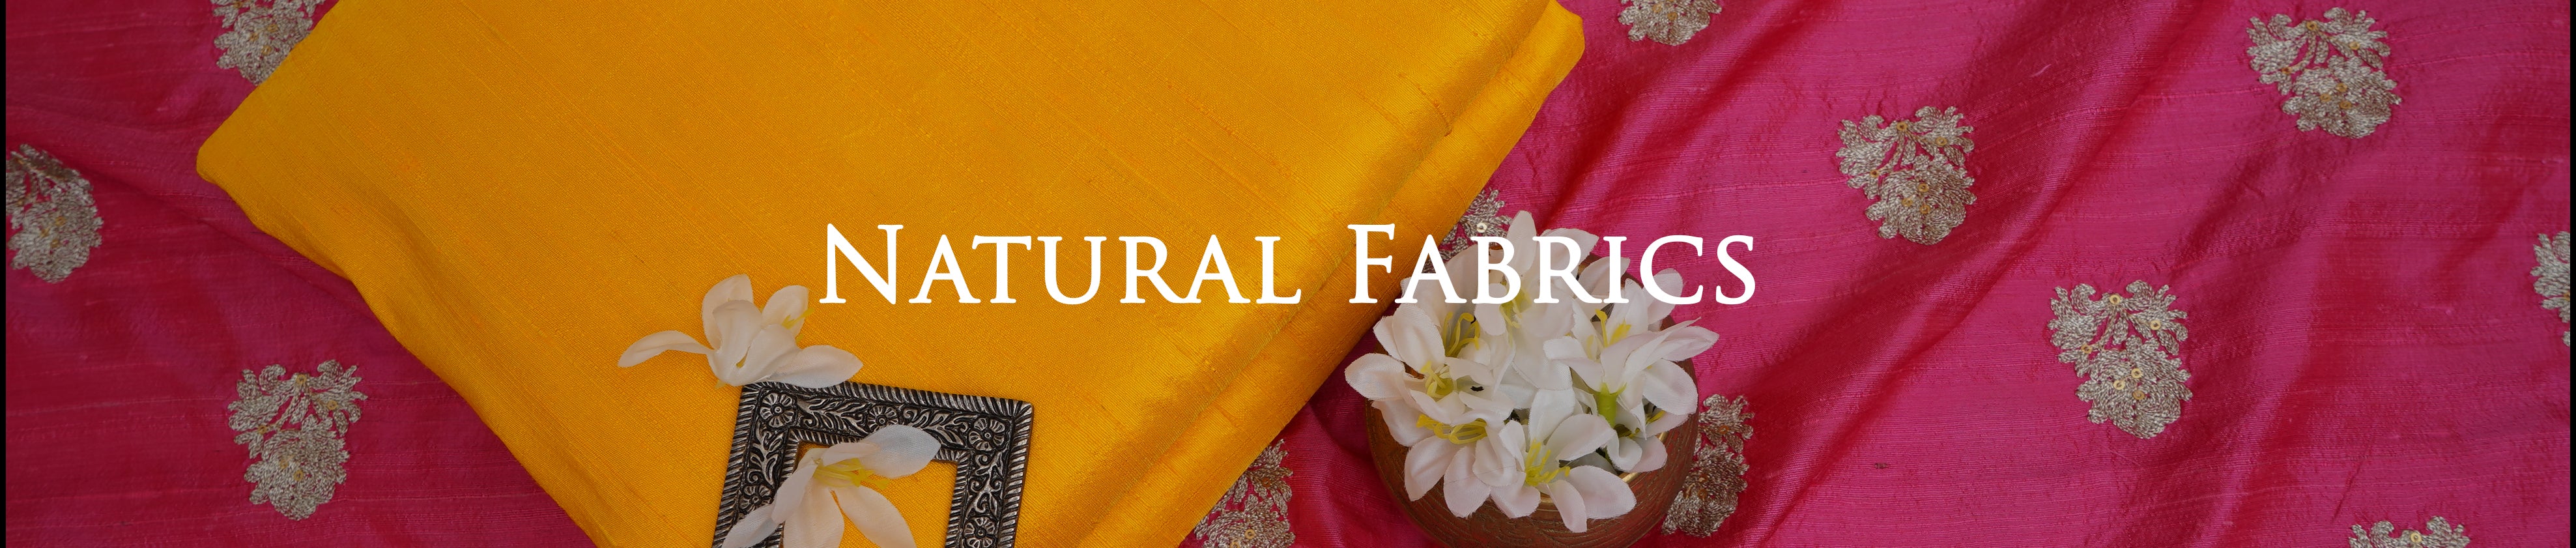 Natural Fabrics